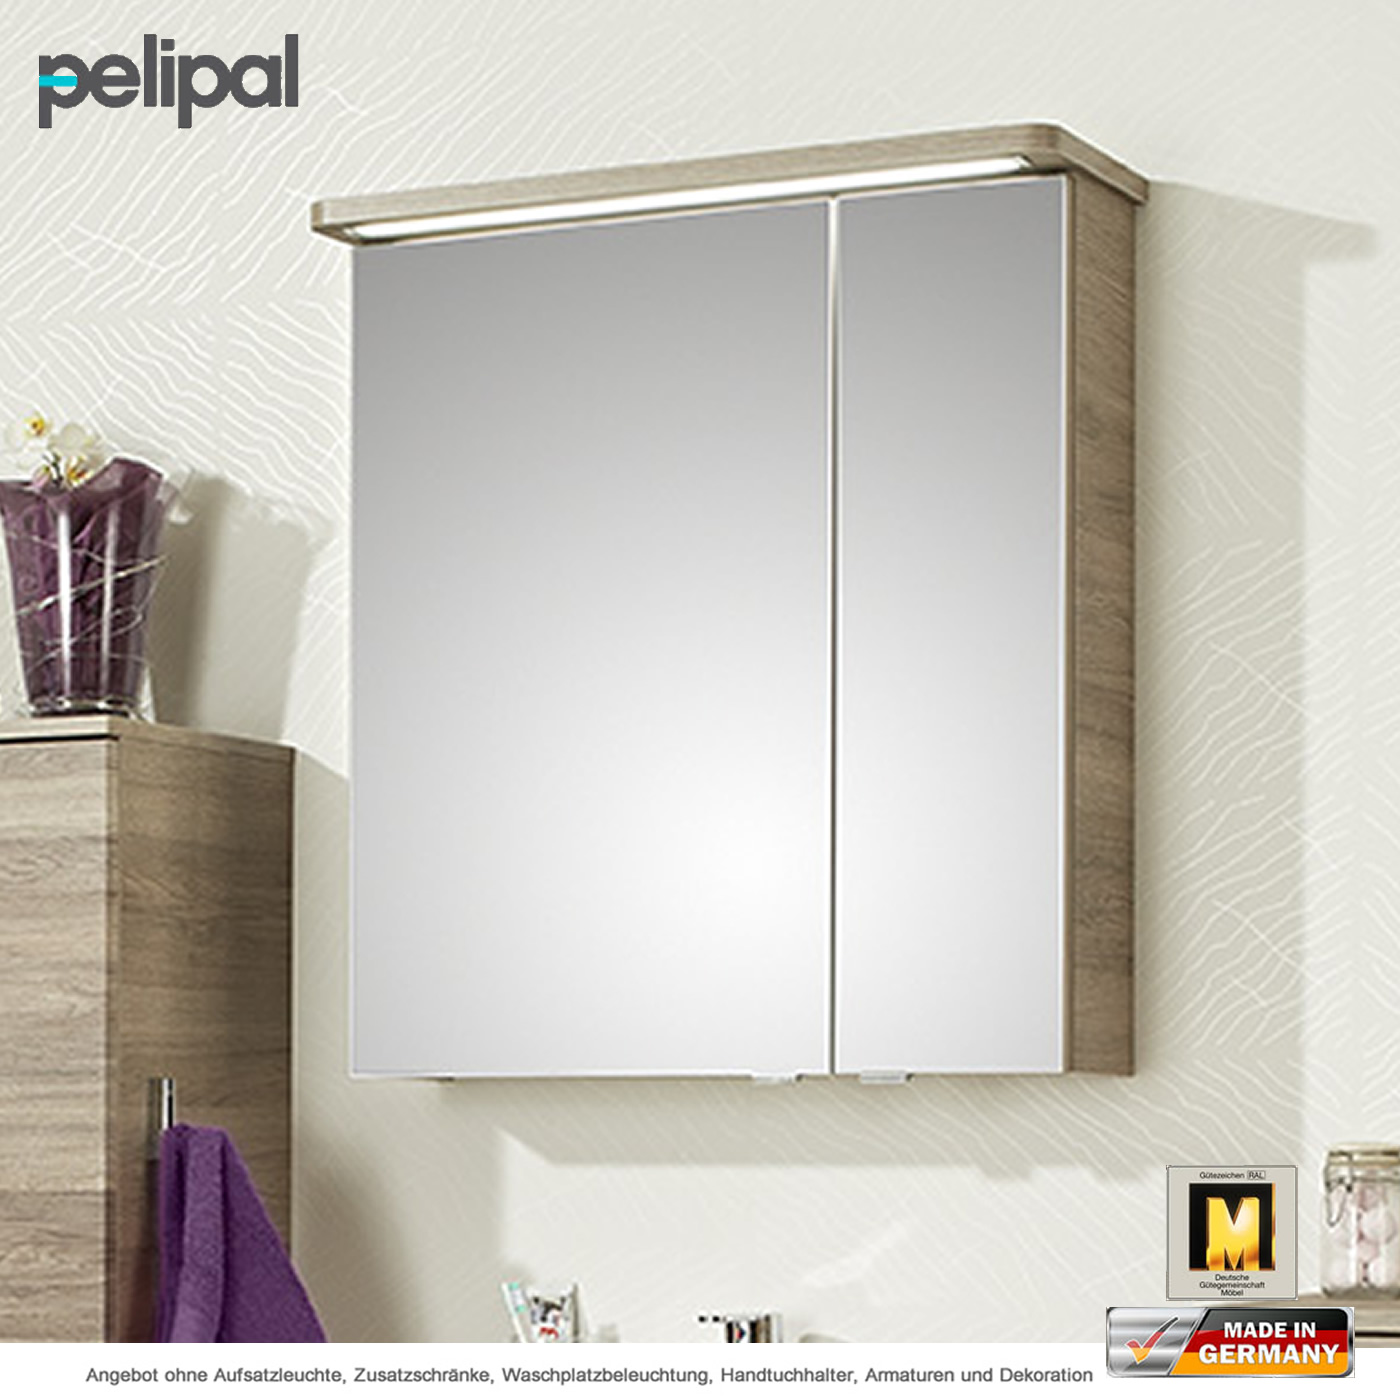 Pelipal Balto Spiegelschrank 66 cm mit 2 Türen | Impulsbad | Spiegelschränke